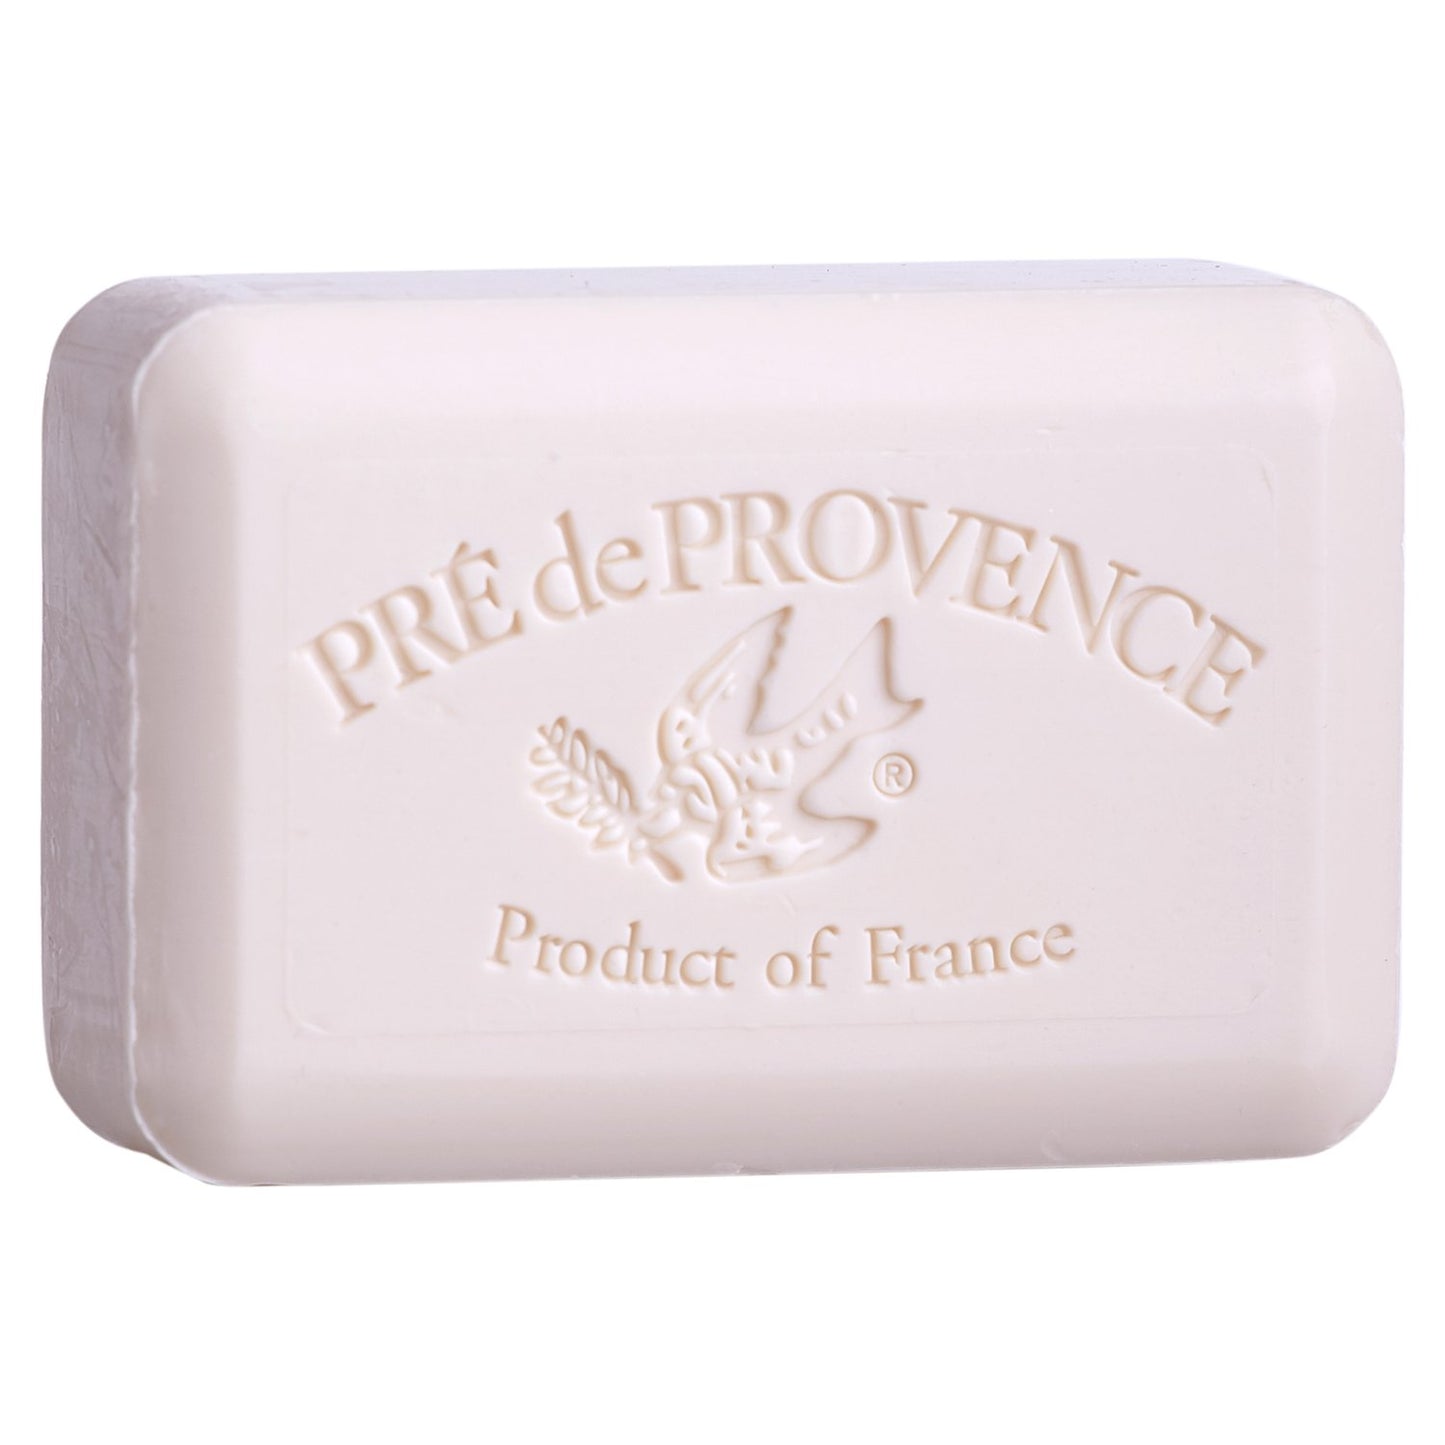 Pre De Provence Soap - Spiced Balsam